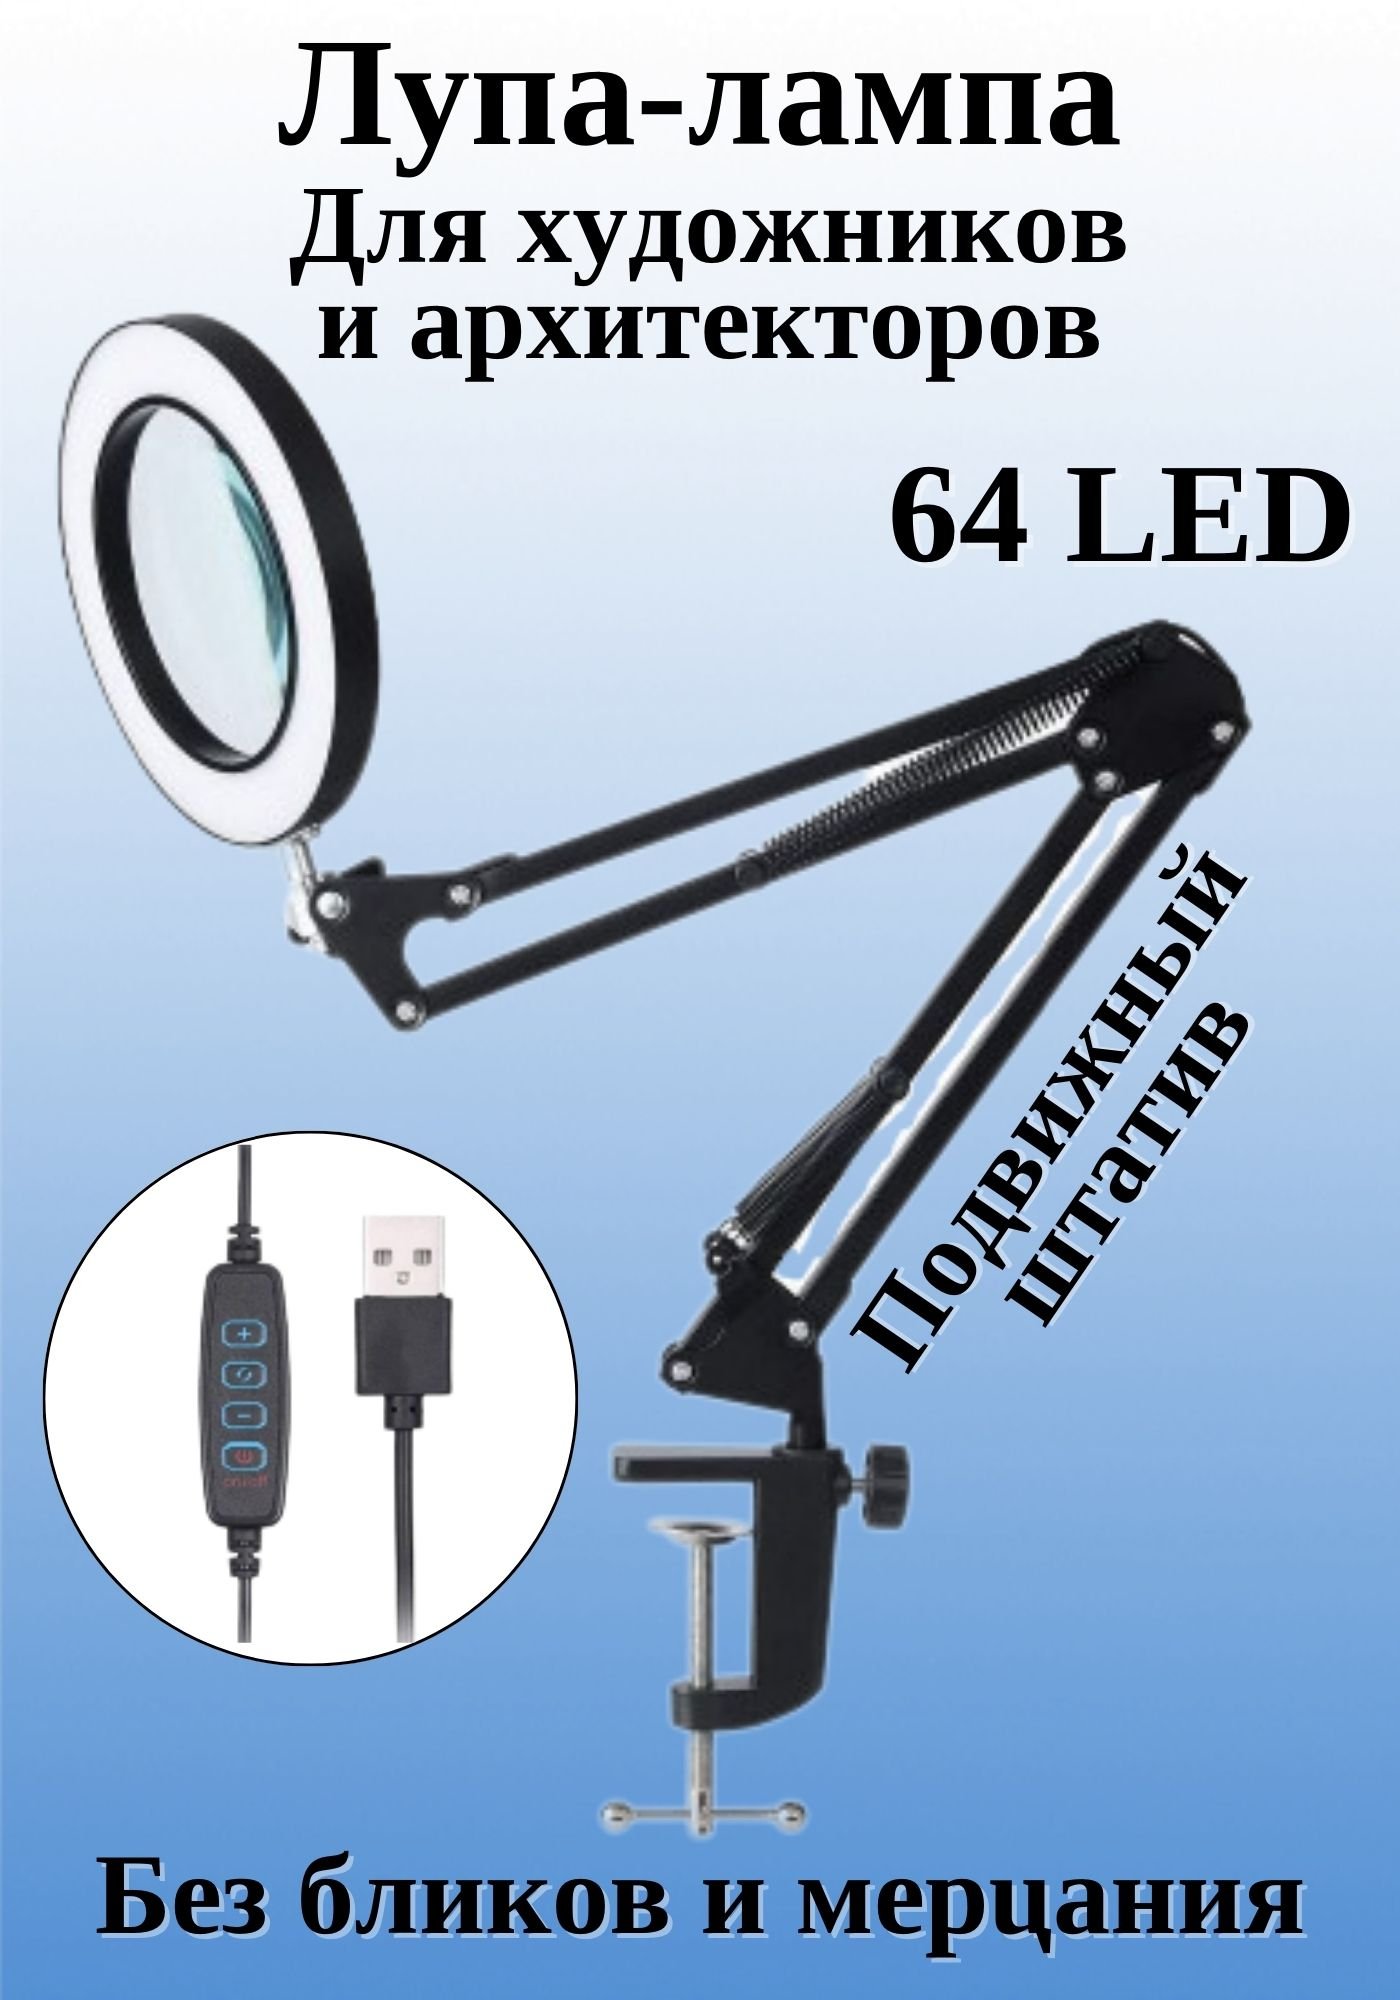 Лупа-лампа настольная на струбцине 64 LED, 10х, SoulArt, 224579